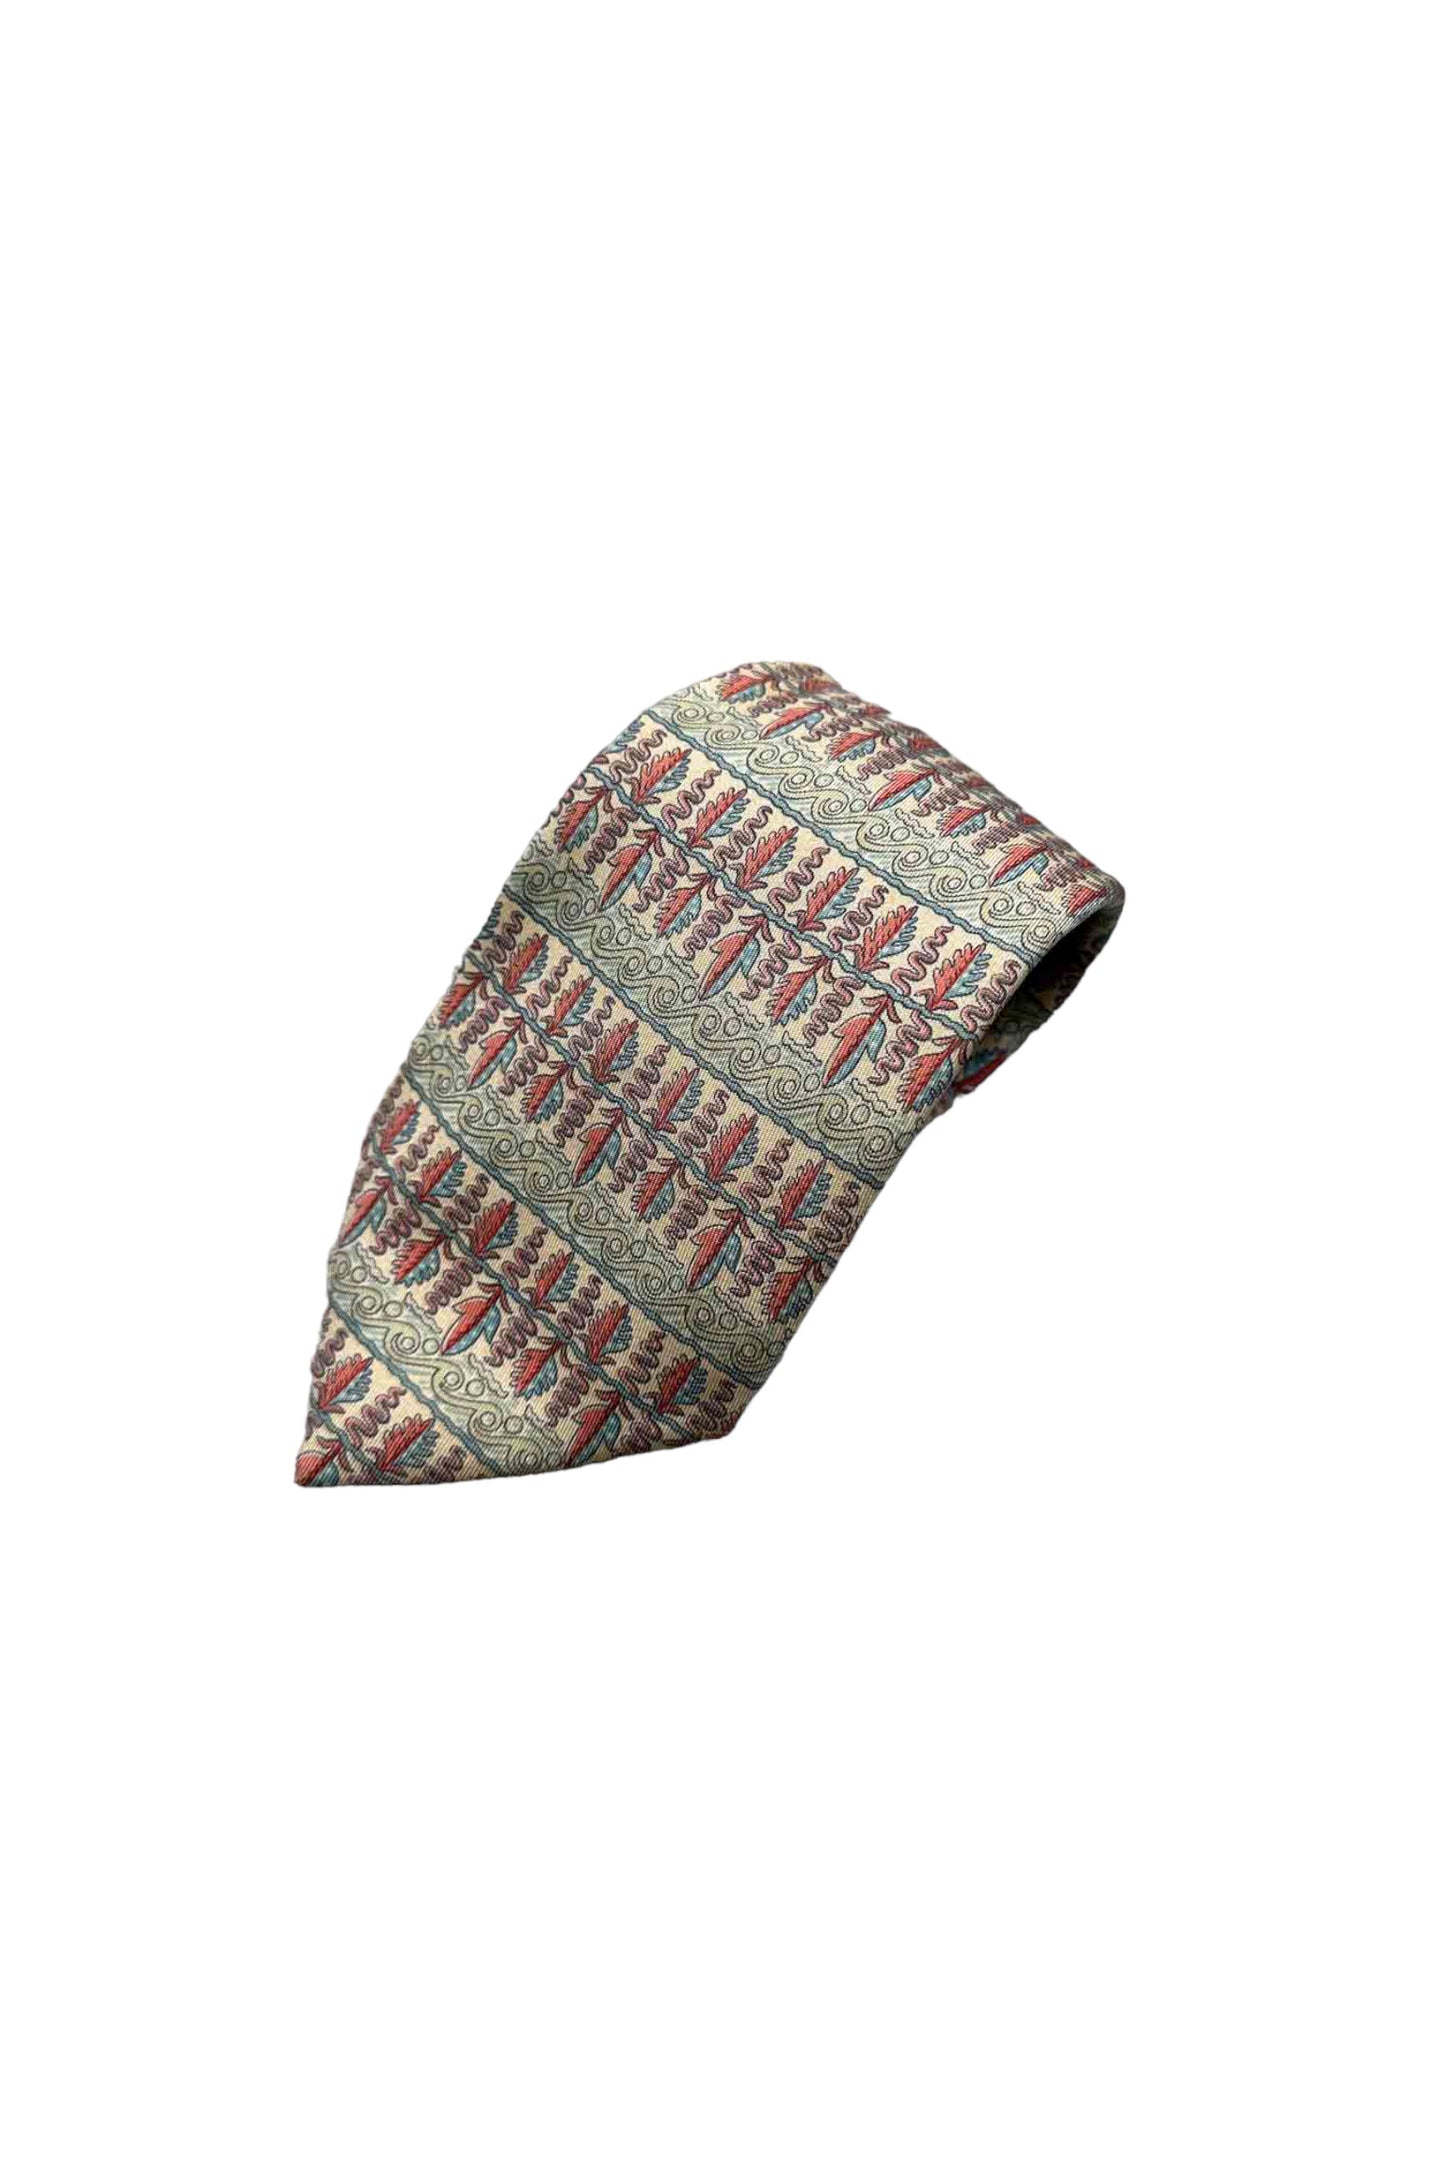 法国制造 HERMES 真丝领带